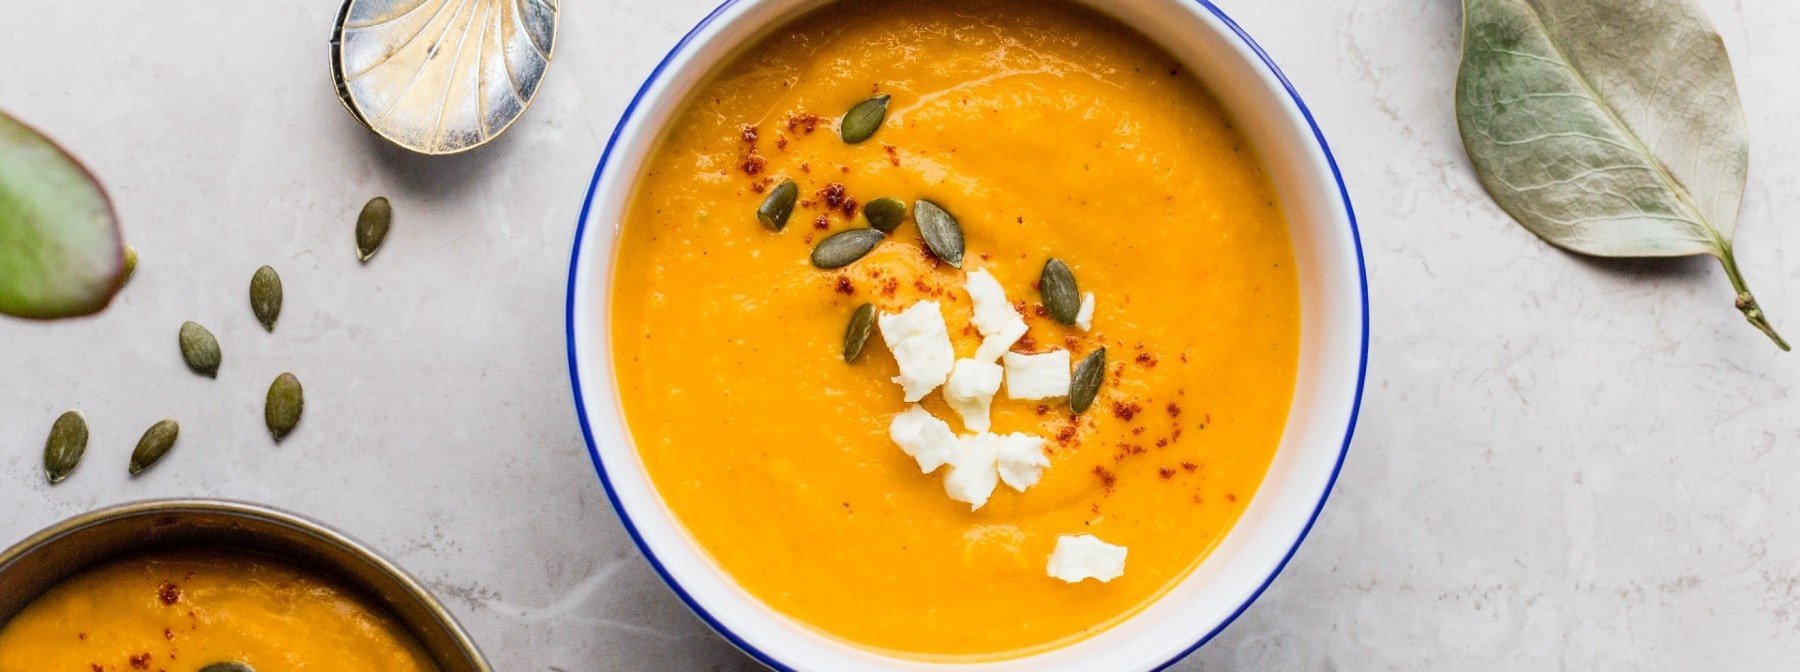 Quanto è salutare la dieta della zuppa?